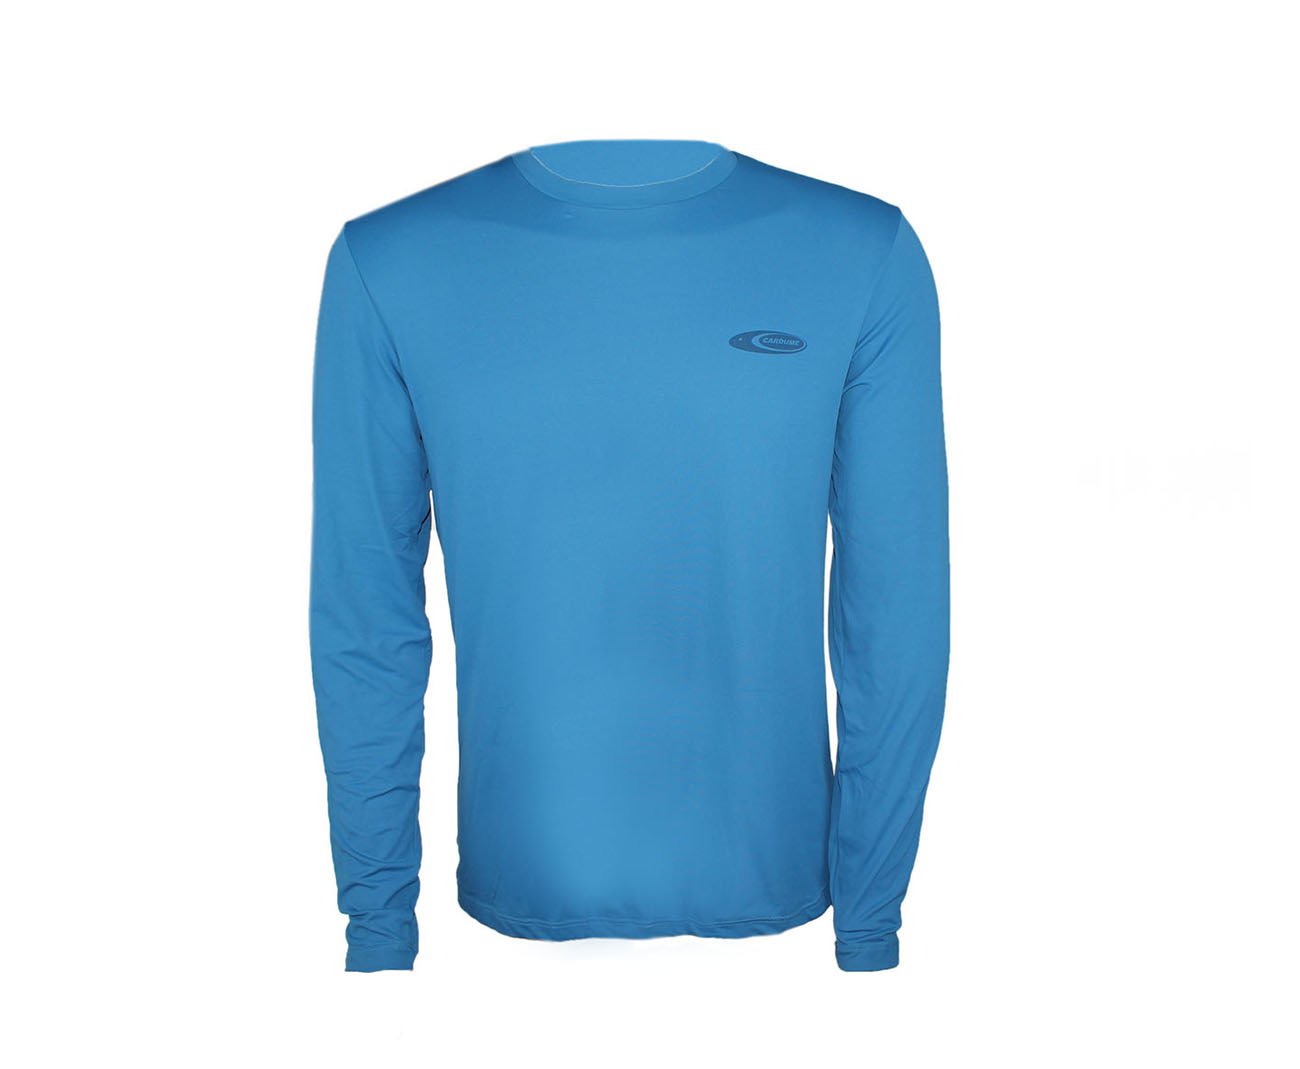 Camiseta Softline Azul - Proteção Uva/uvb 50+ Fps - Cardume